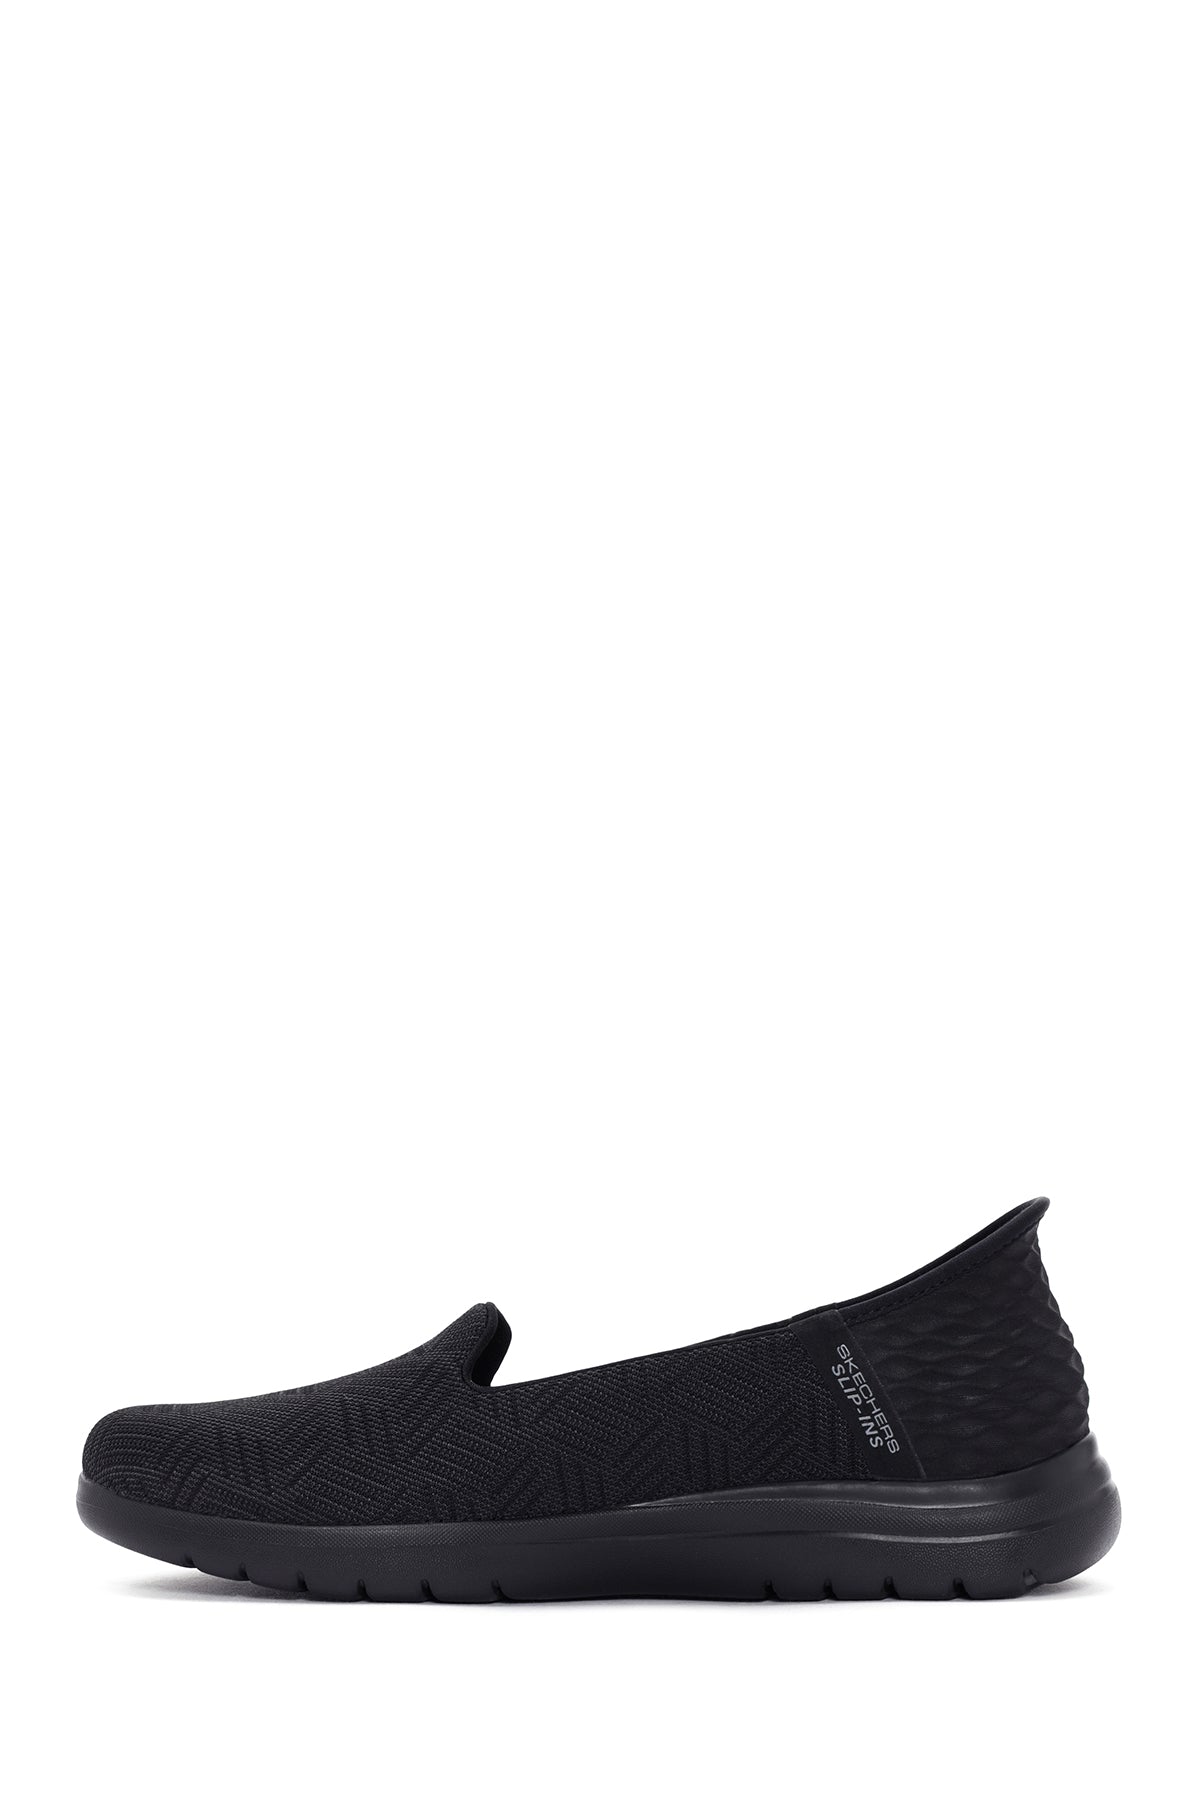 Skechers Kadın Siyah Kumaş Sandalet